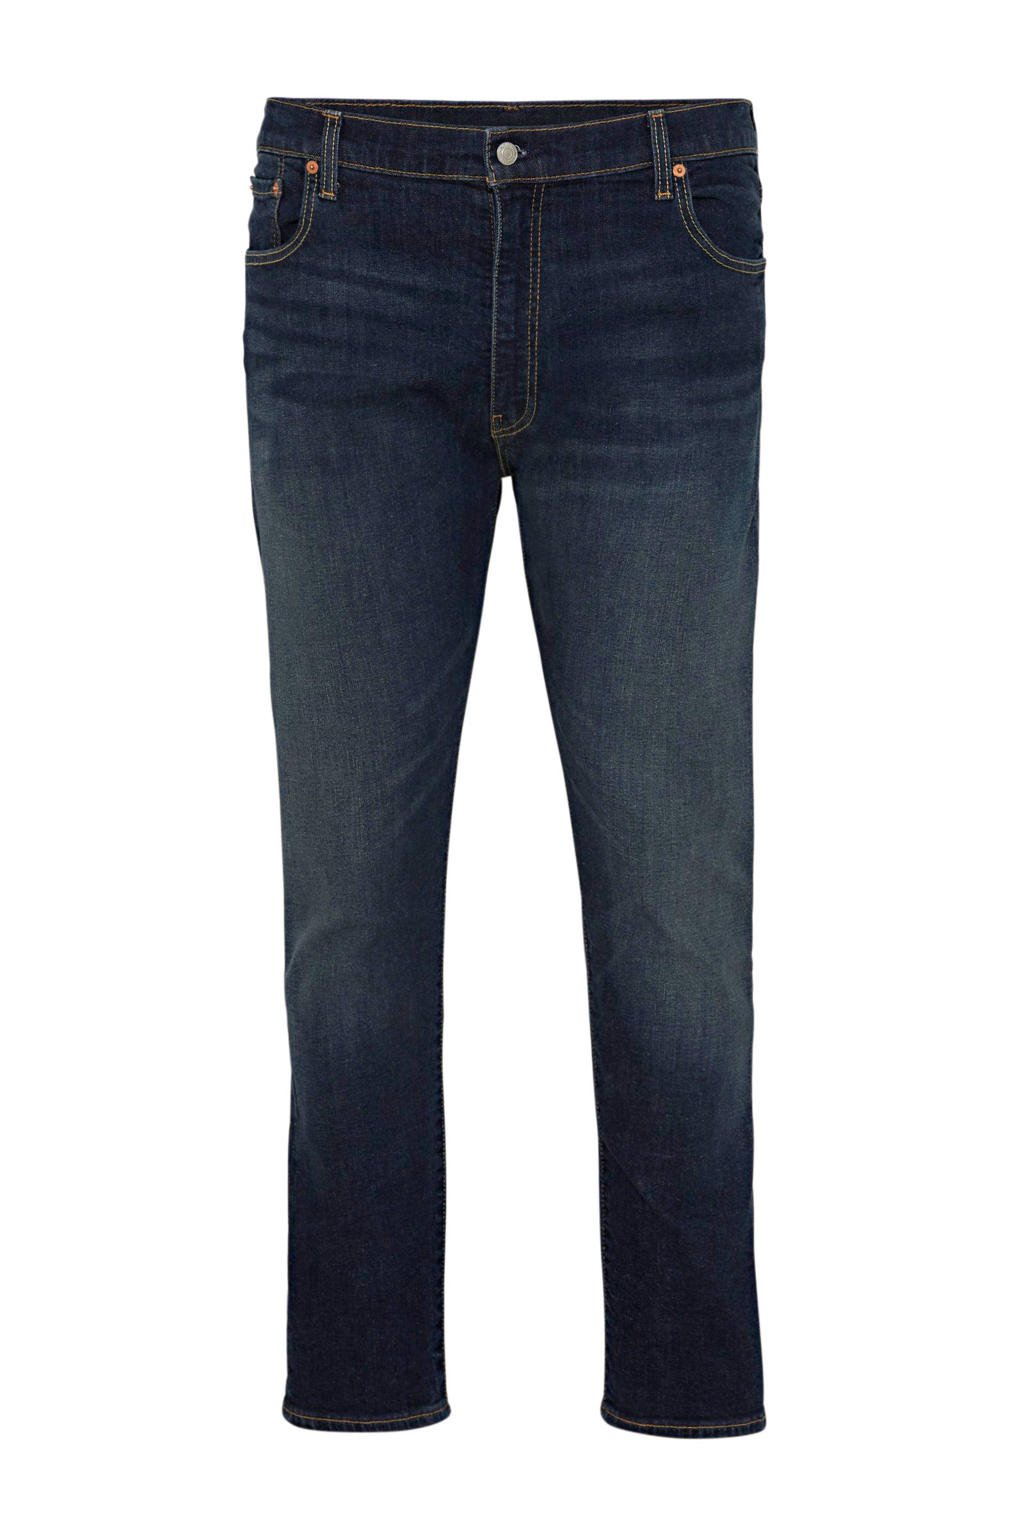 Levi's Big and Tall slim tapered fit jeans 512 Plus Size dark denim